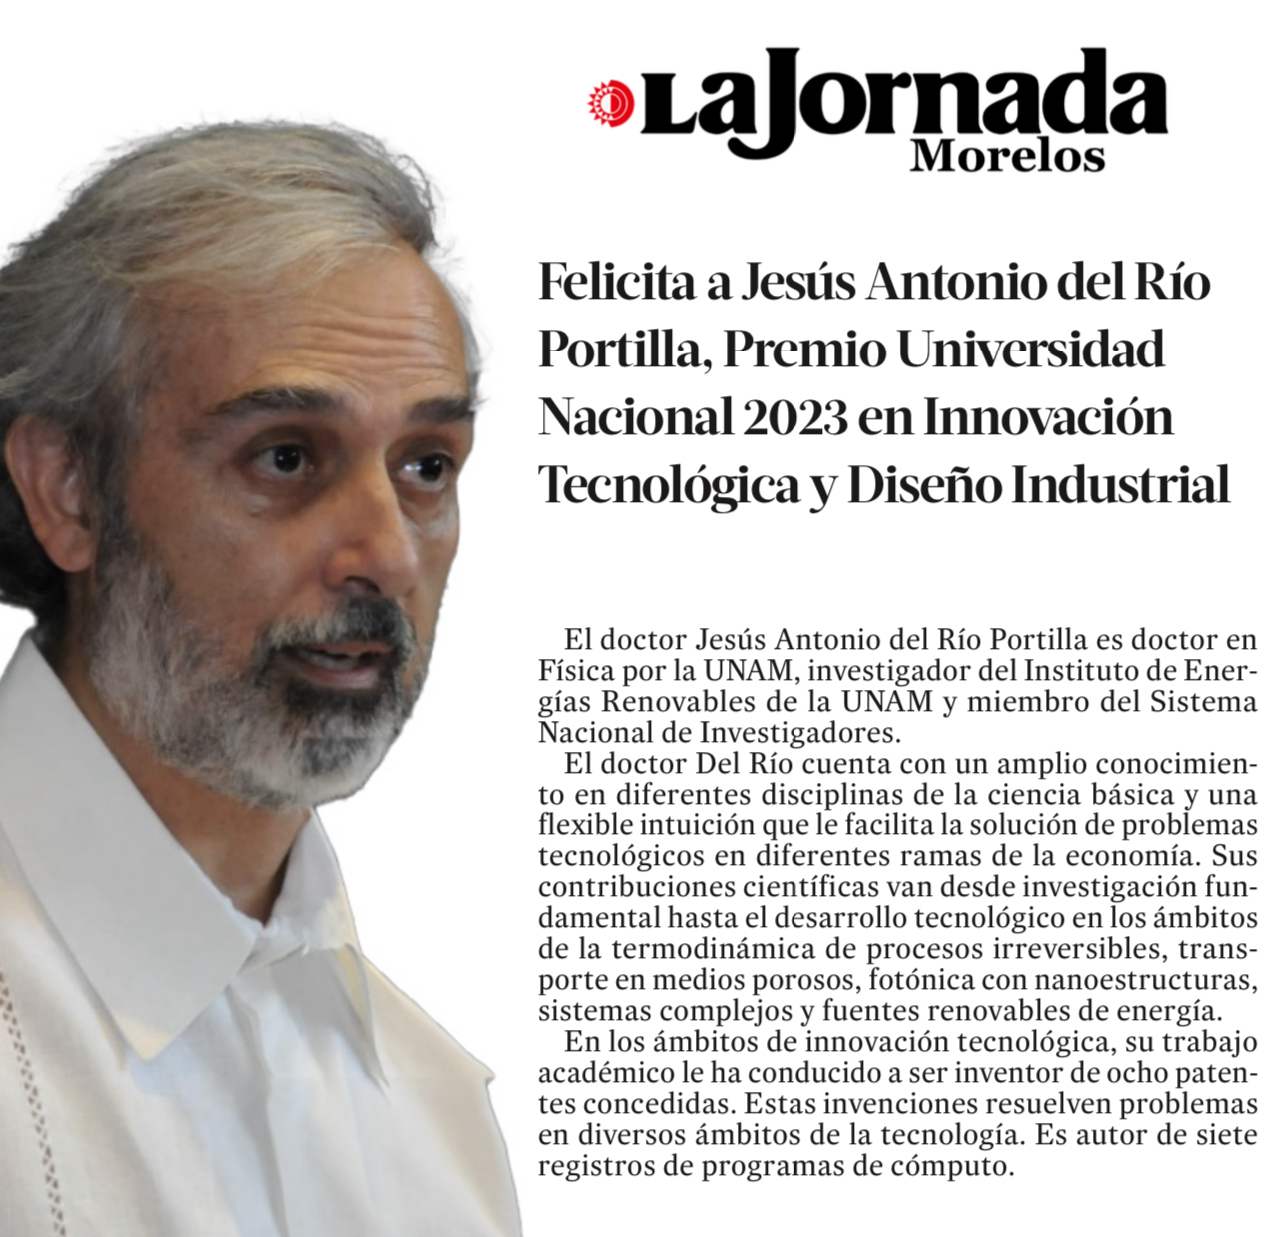 La Jornada de Morelos Felicita a Jesús Antonio del Río Portilla, Premio Universidad Nacional 2023 en Innovación Tecnológica y Diseño Industrial